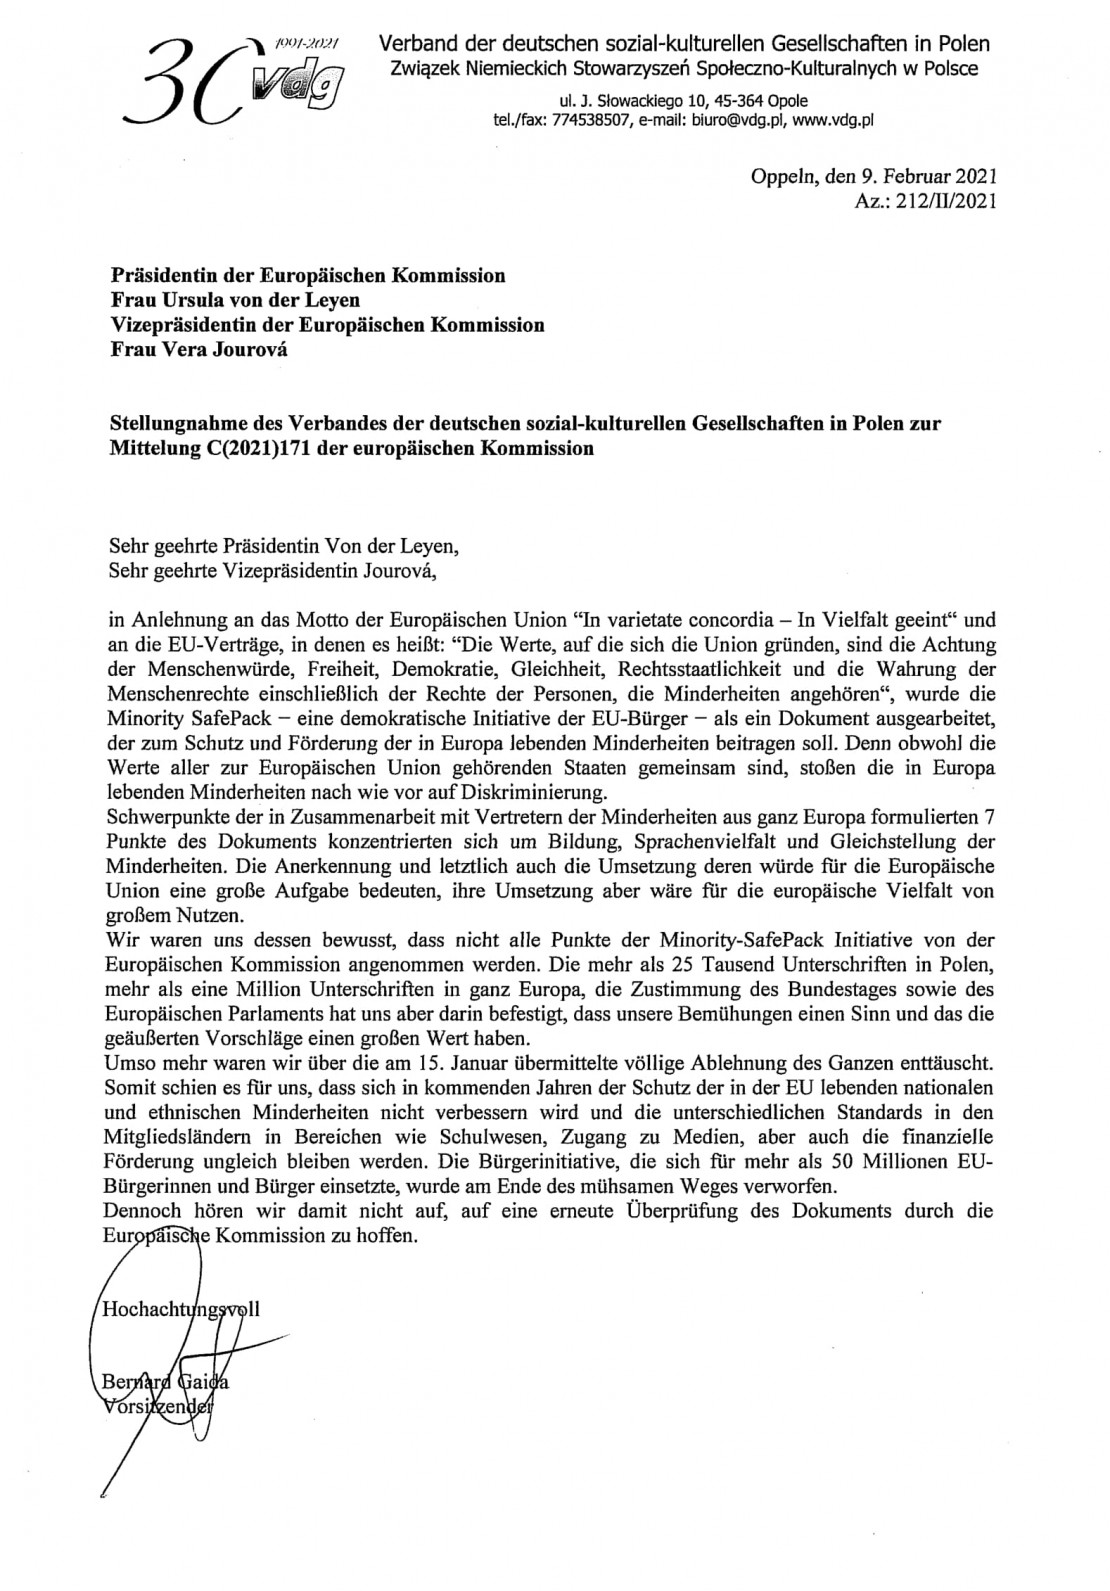 Stellungnahme VdG zur Ablehnung der MSPI.jpg